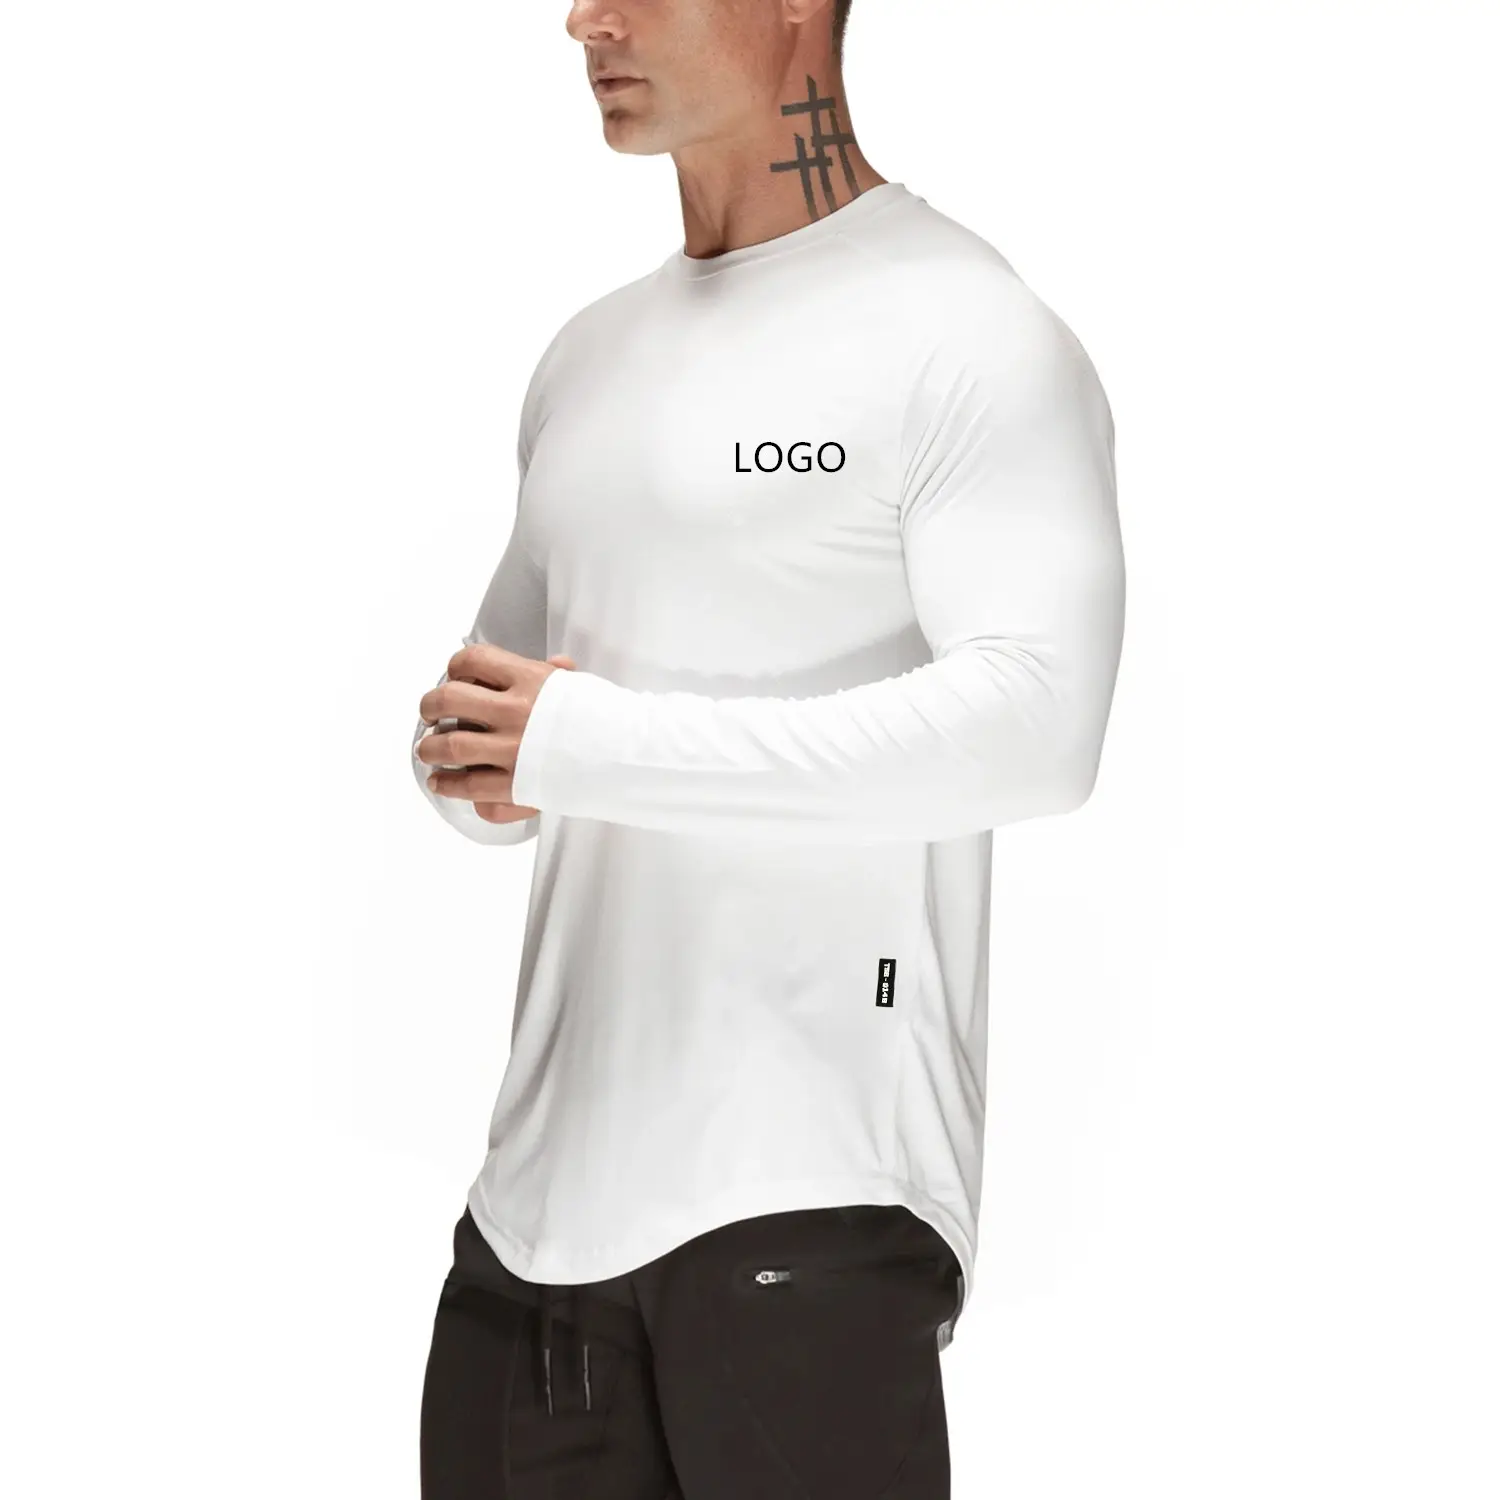 कस्टम सफेद कपास Mens जिम एथलेटिक टी शर्ट मुद्रण लंबी बांह की टी शर्ट